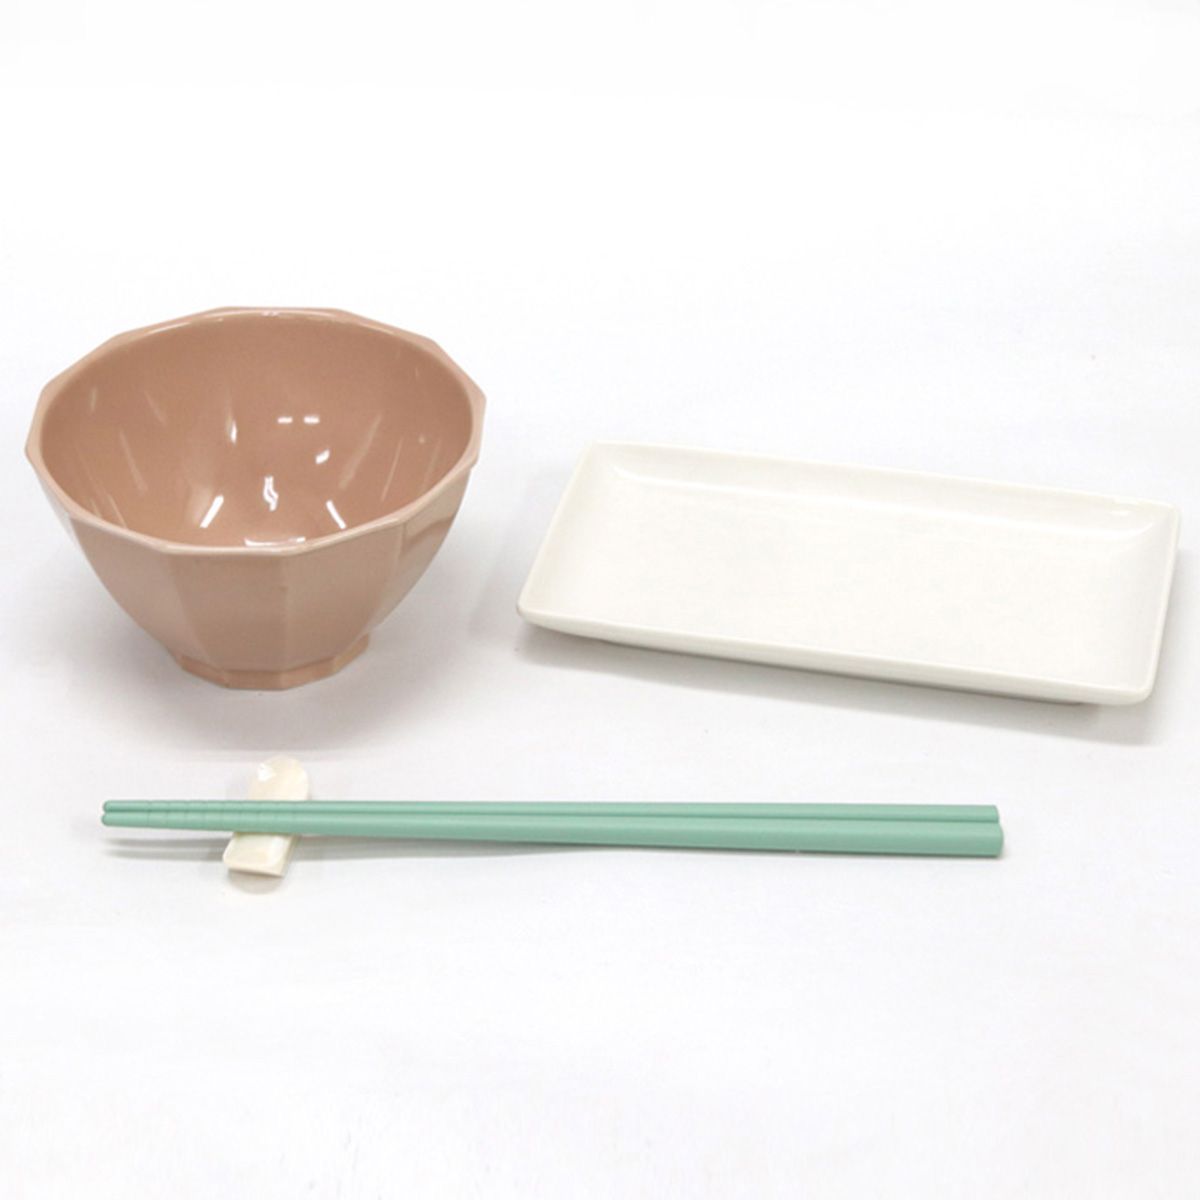 お箸 天然竹製  ルシータ箸 グリーン 22.5cm 9001/345943